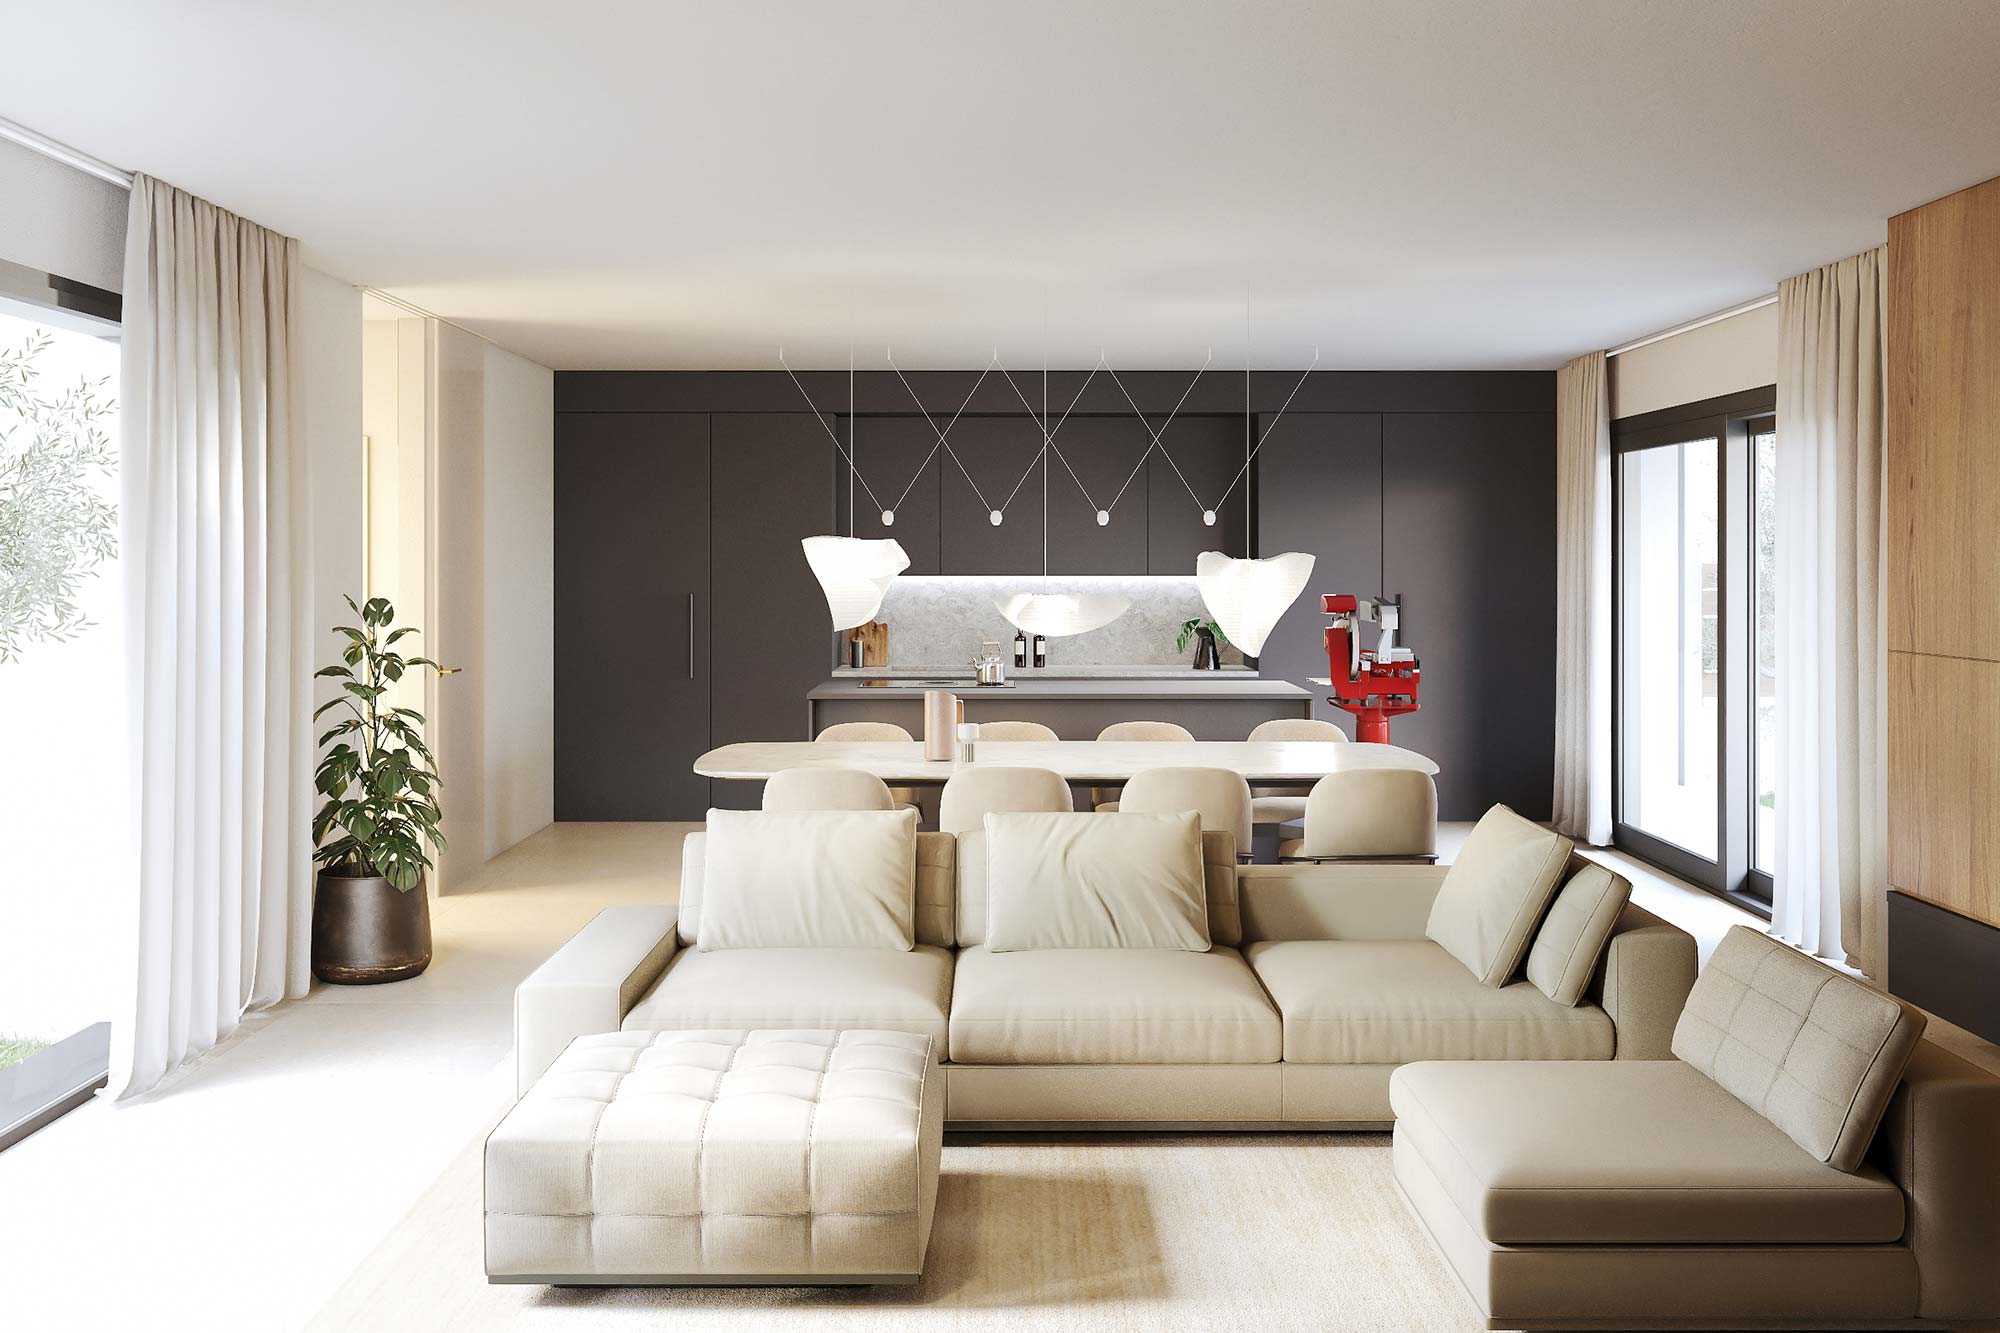 villa rodengo saiano salotto cucina brescia studio architettura interior design brescia banp studio